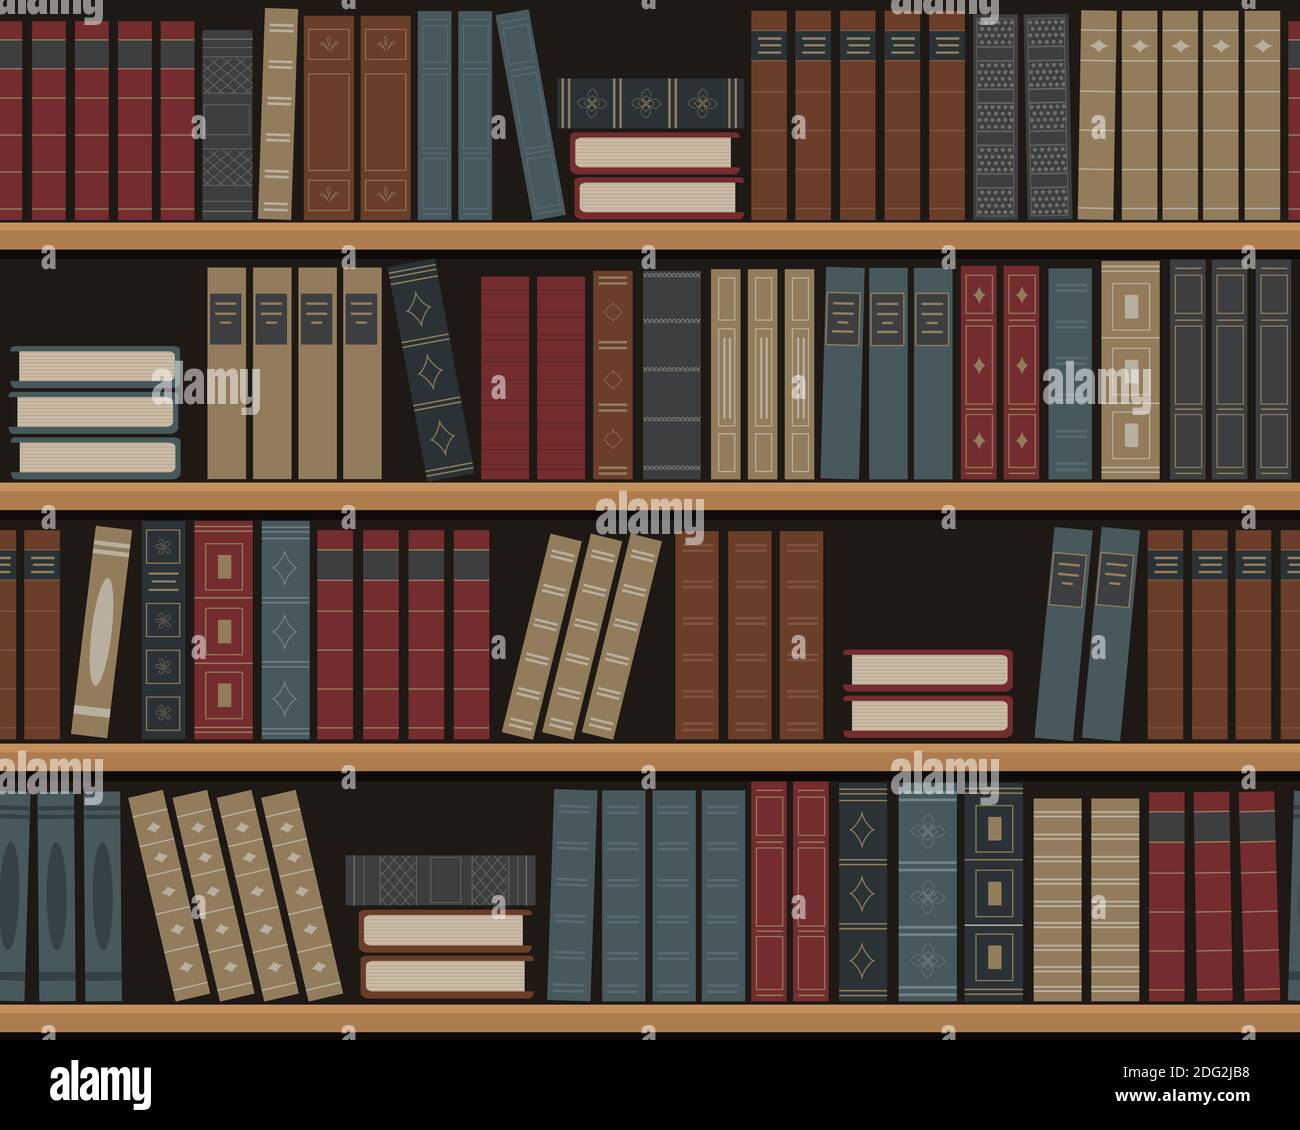 Bücherregale mit Büchern. Nahtloser Hintergrund. Alte Bücher auf den Regalen. Bibliothek mit Retro-Büchern. Buchhandlung. Vektorgrafik. Stock Vektor